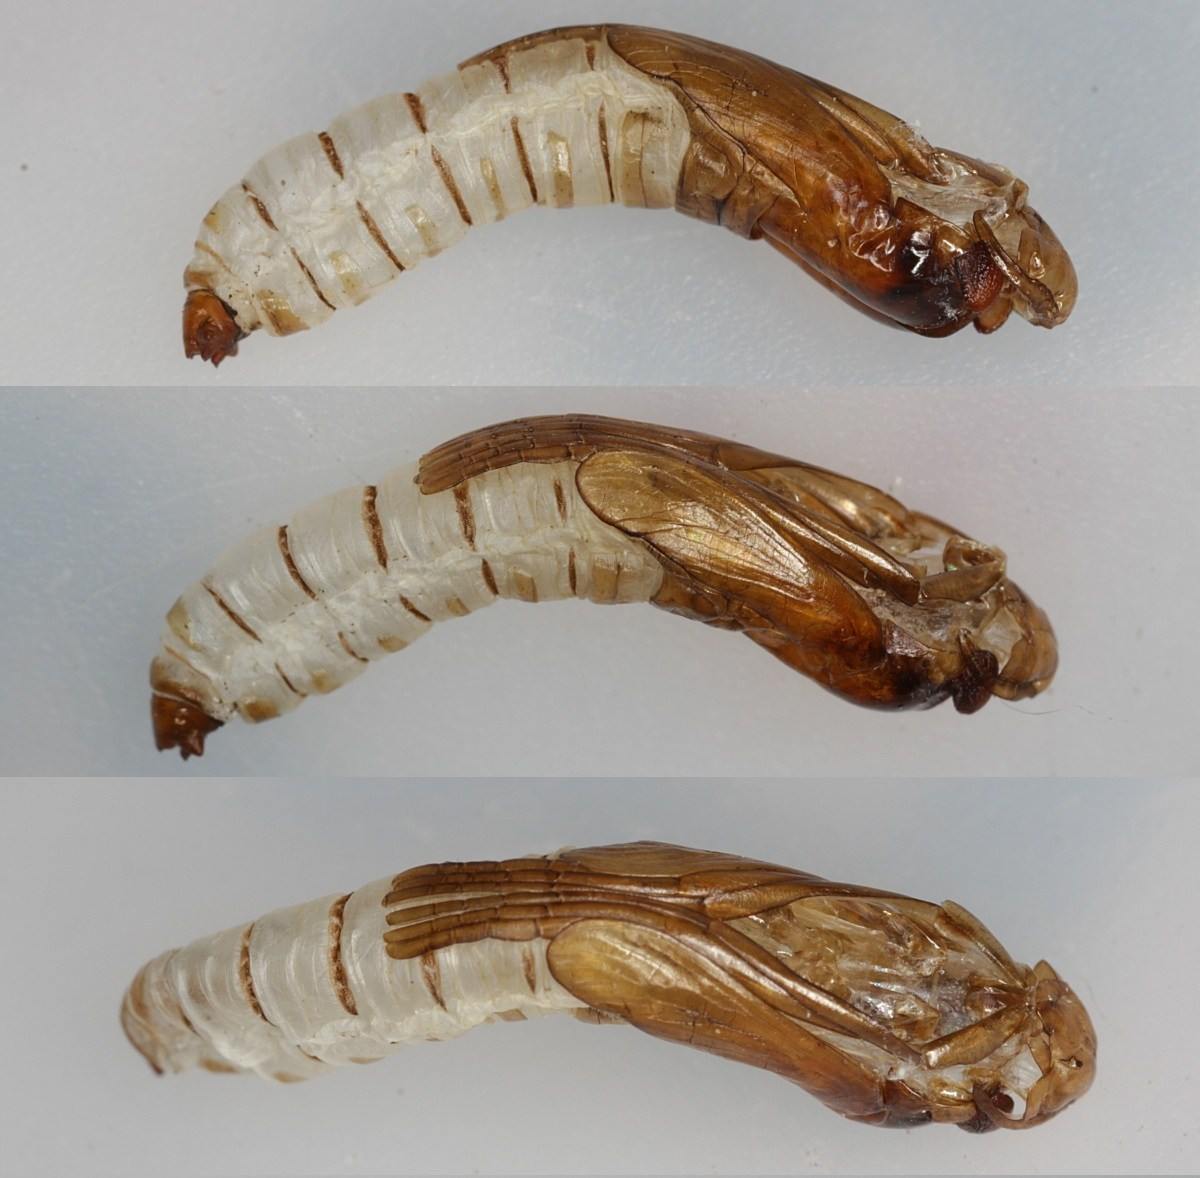 Limoniidae: Metalimnobia quadrimaculata (exuvium) (1)